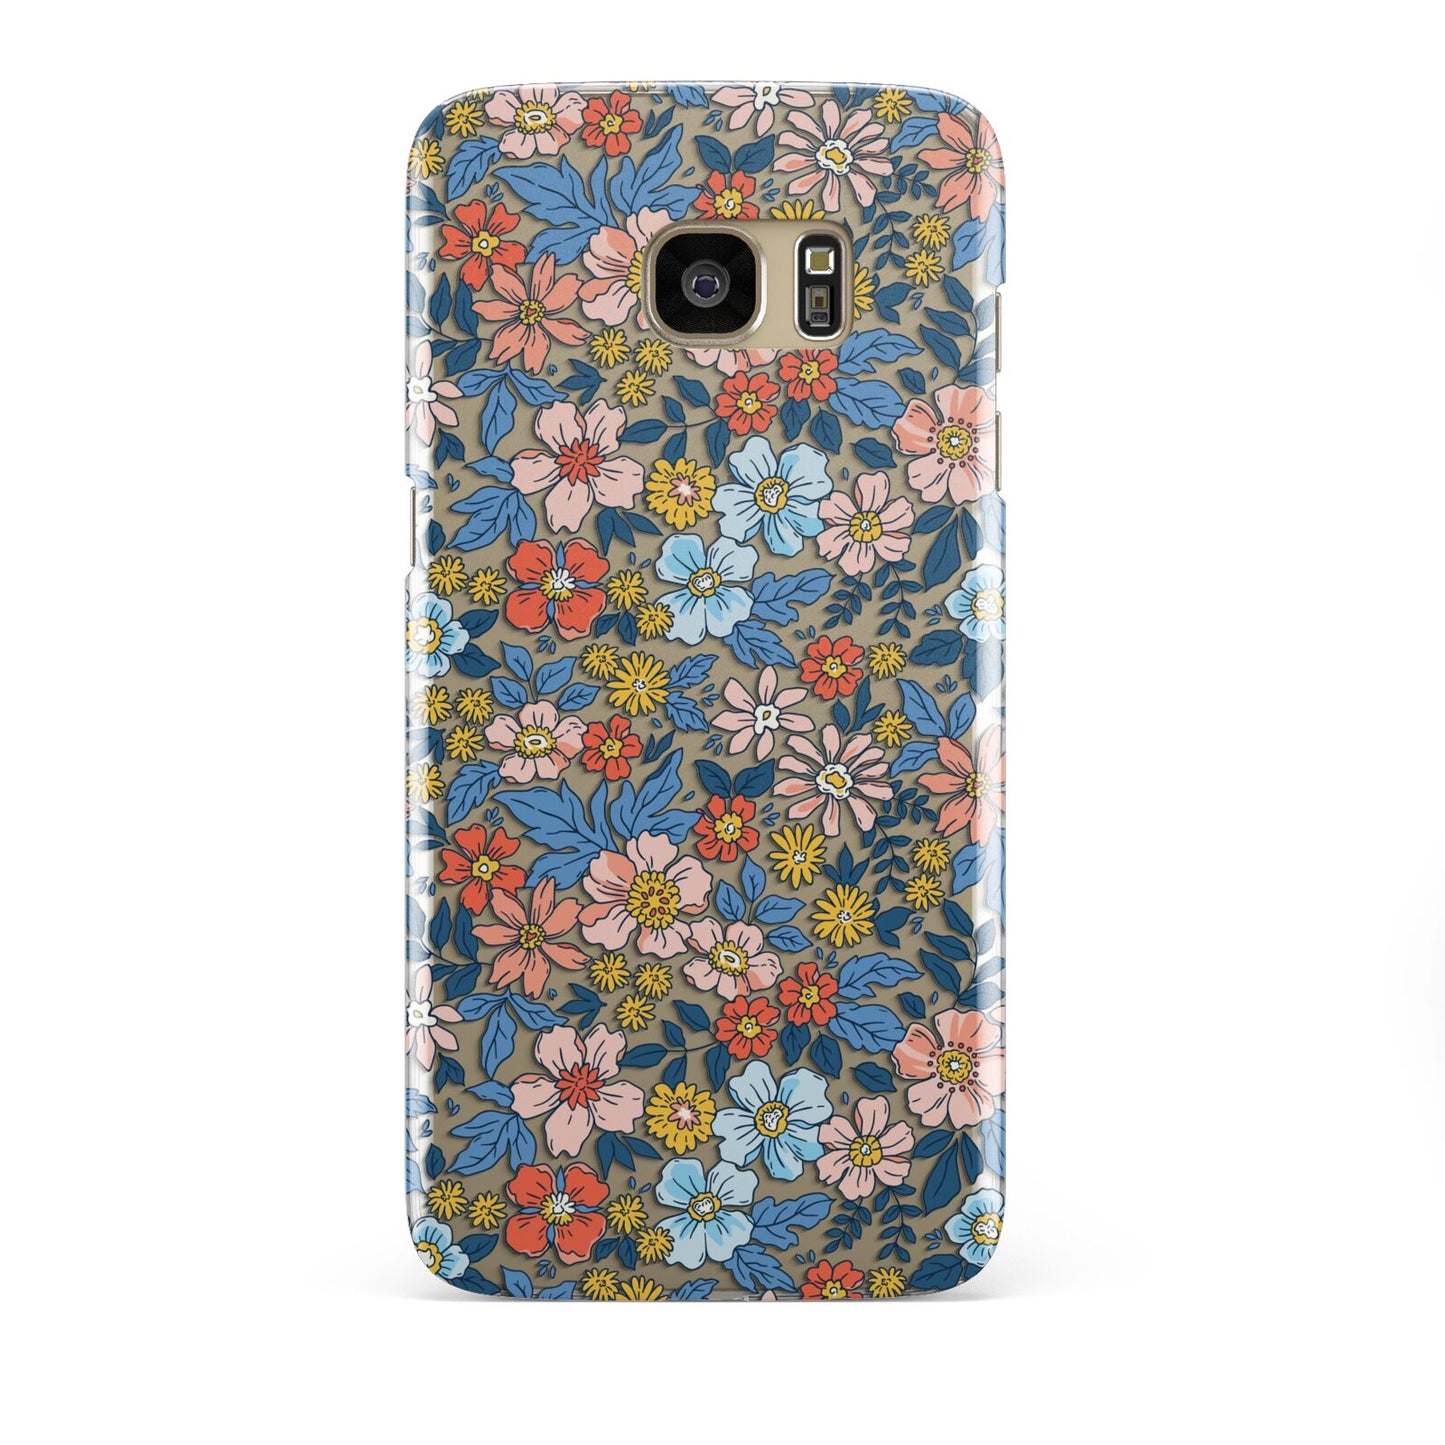 Vintage Flower Samsung Galaxy S7 Edge Case